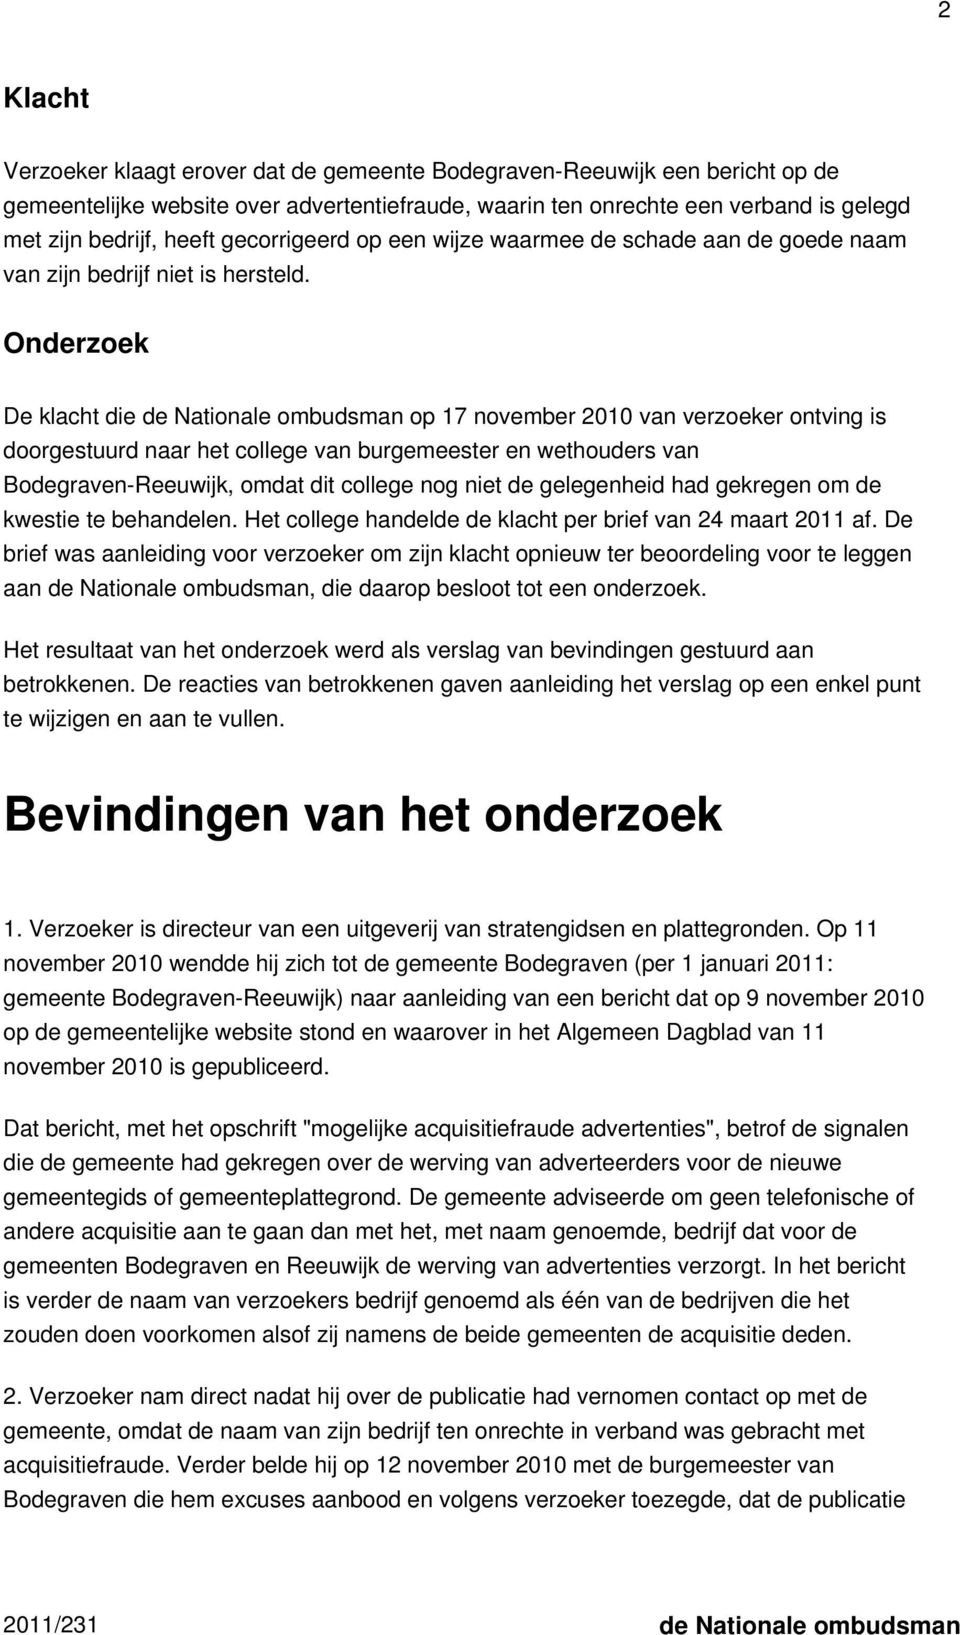 Onderzoek De klacht die de Nationale ombudsman op 17 november 2010 van verzoeker ontving is doorgestuurd naar het college van burgemeester en wethouders van Bodegraven-Reeuwijk, omdat dit college nog